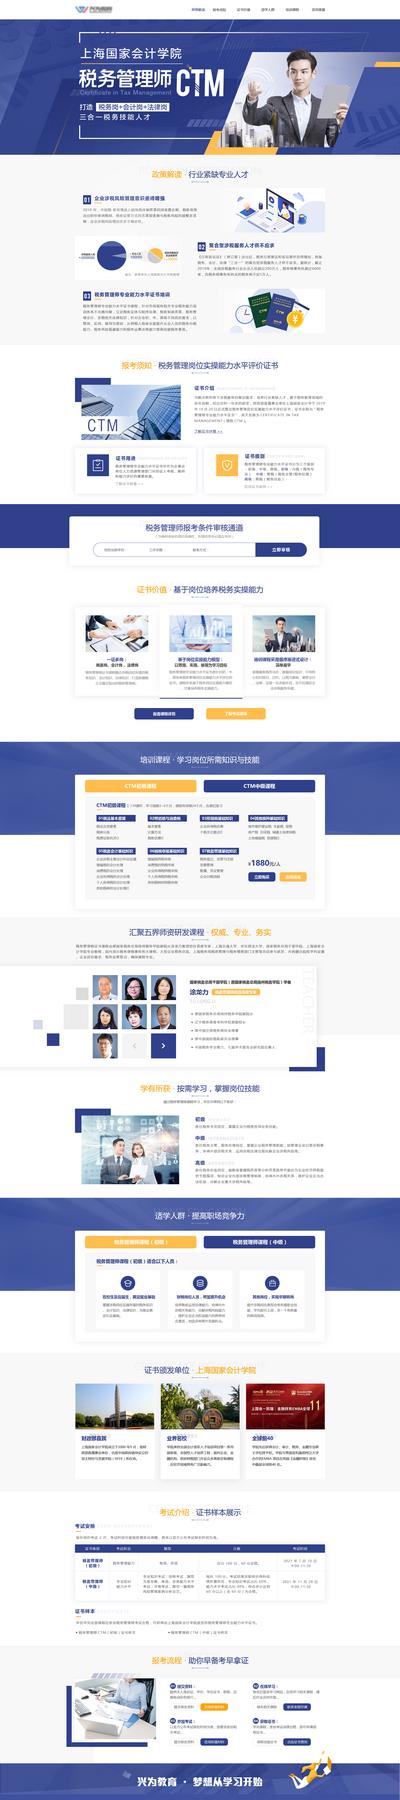 南门网 专题设计 网页设计 税务师考试 金融 财务 理财